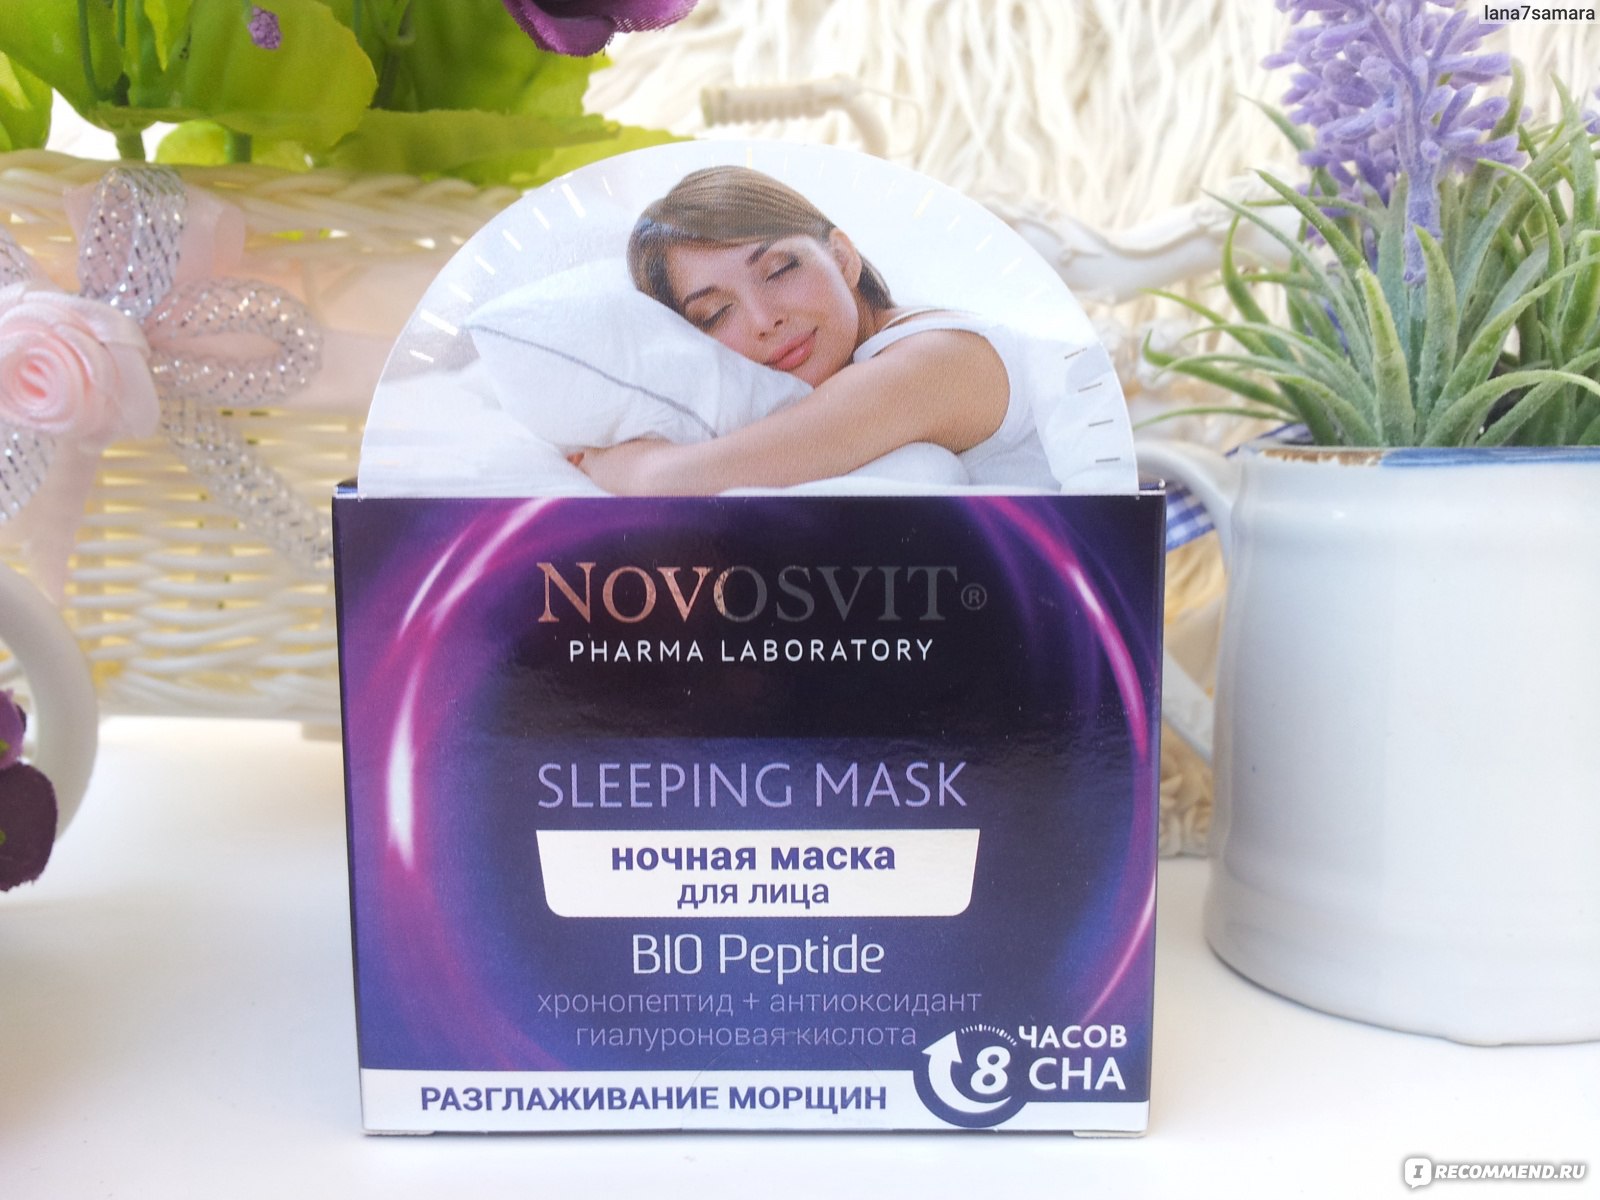 Ночная маска biodance. Novosvit маска ночная. Новосвит ночная маска для лица. Маска для лица Novosvit sleeping Mask Smart Hydro Patch ночная тройное увлажнение. Комплимент слипинг Маск ночная маска для лица и шеи.